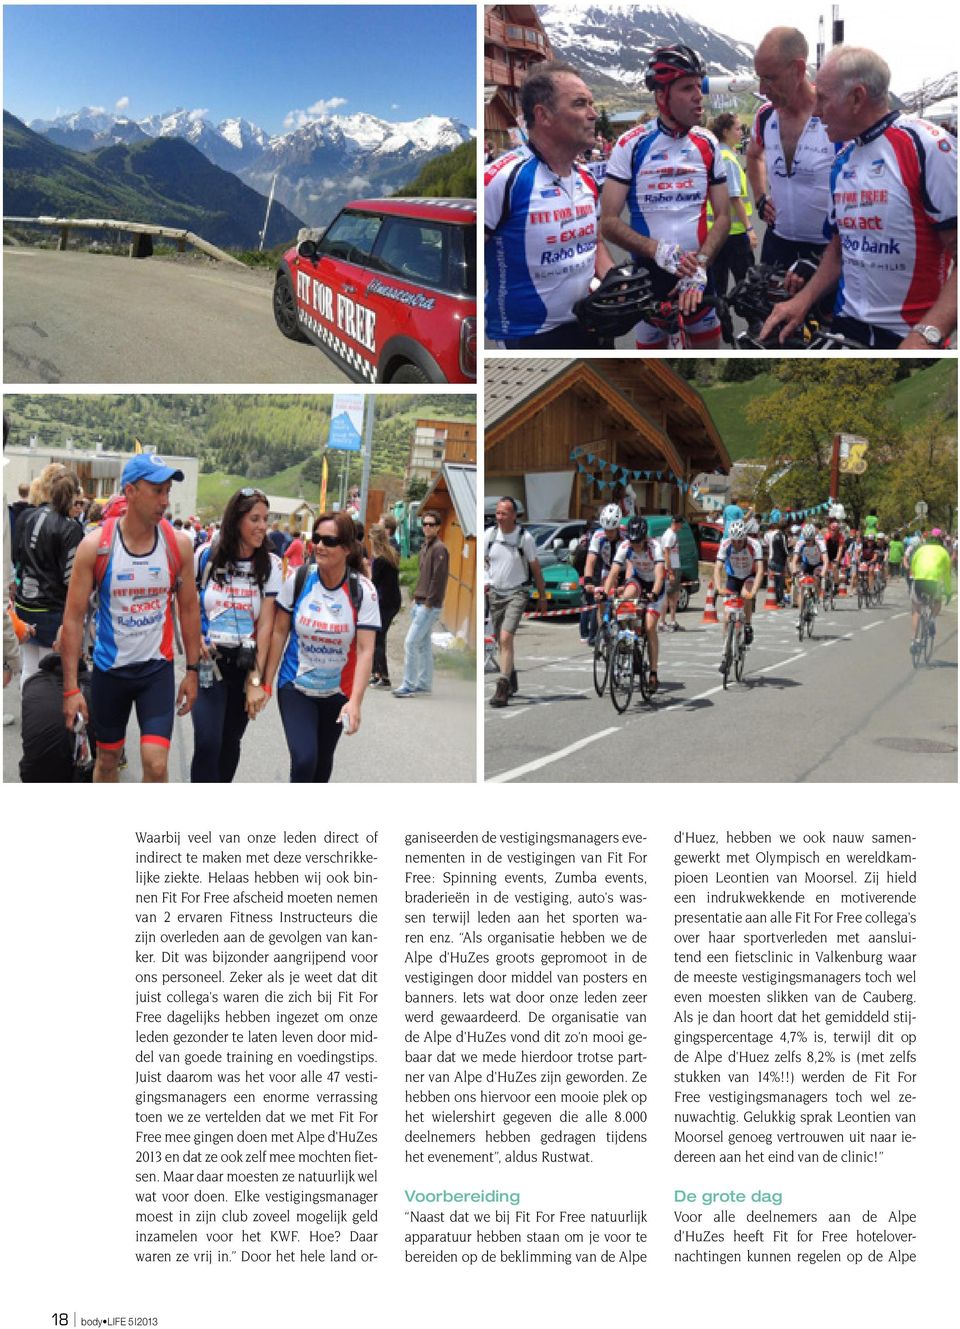 De organisatie van de Alpe d'huzes vond dit zo'n mooi gebaar dat we mede hierdoor trotse partner van Alpe d'huzes zijn geworden.